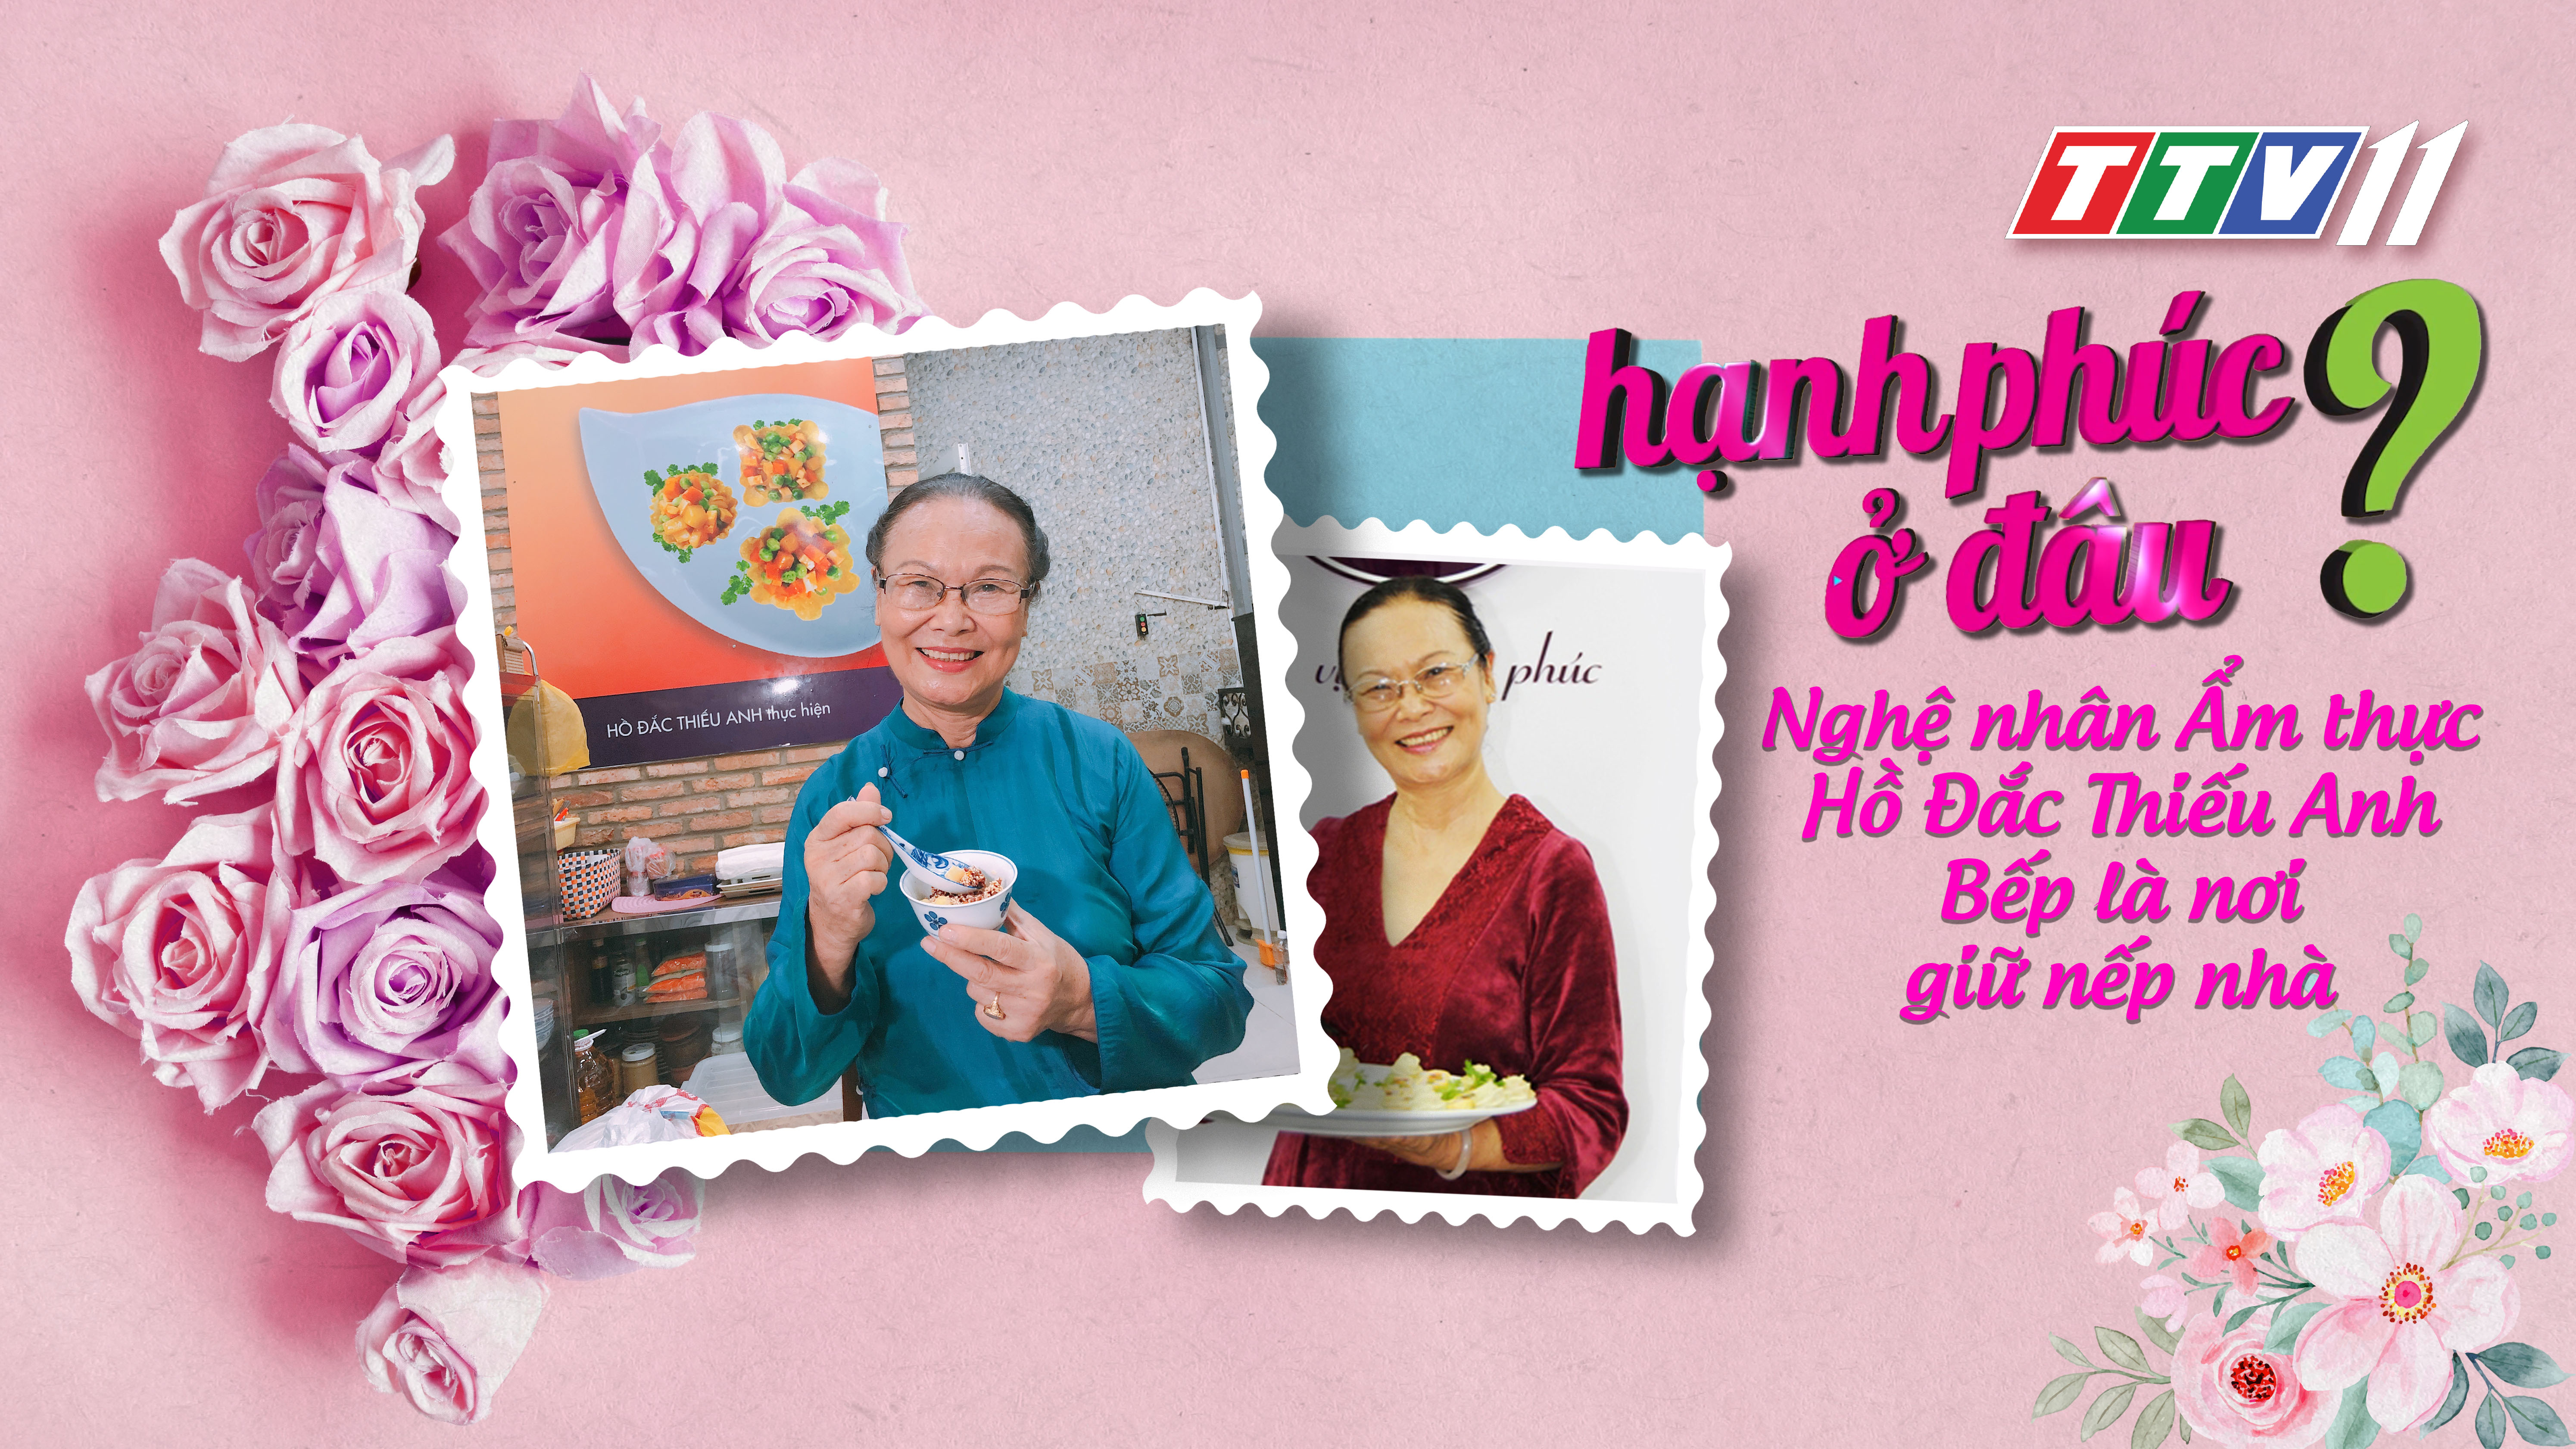 Nghệ nhân văn hóa ẩm thực Hồ Đắc Thiếu Anh, bếp là nơi giữ nếp nhà | HẠNH PHÚC Ở ĐÂU? | TayNinhTV